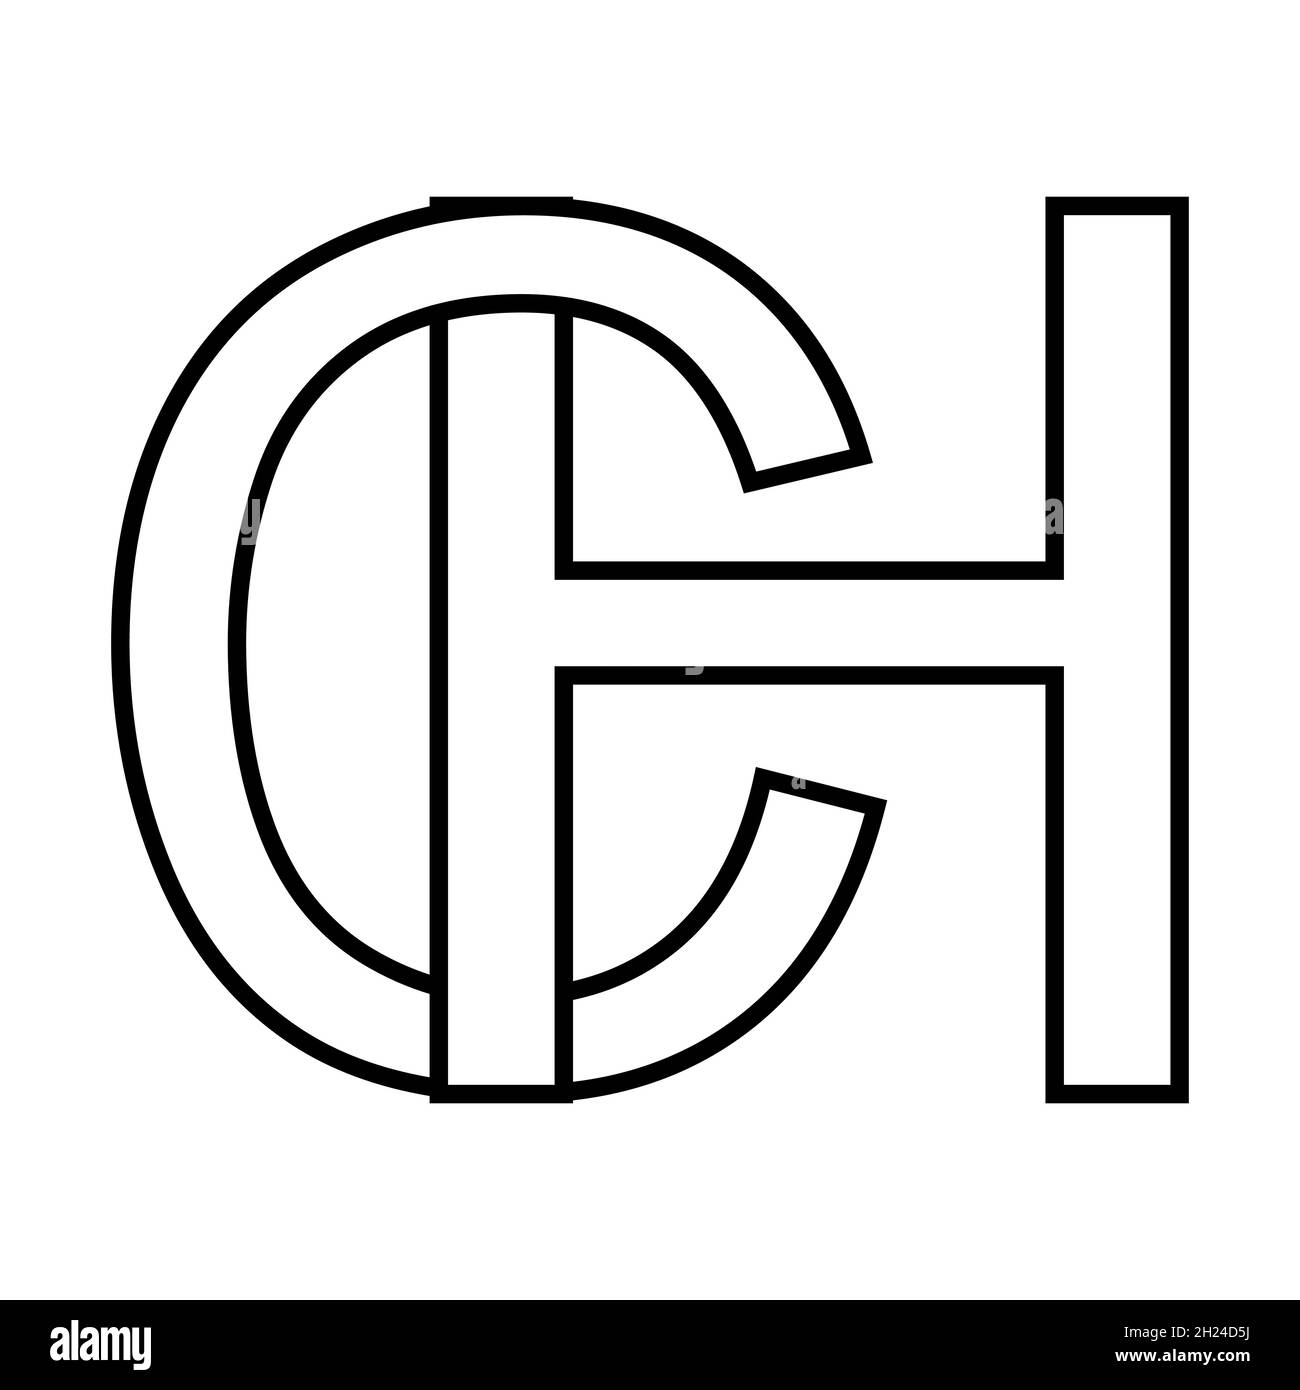 Logo signe hc ch icône signe lettres entrelacées c g logo hc, ch premières lettres majuscules motif alphabet h, c Illustration de Vecteur